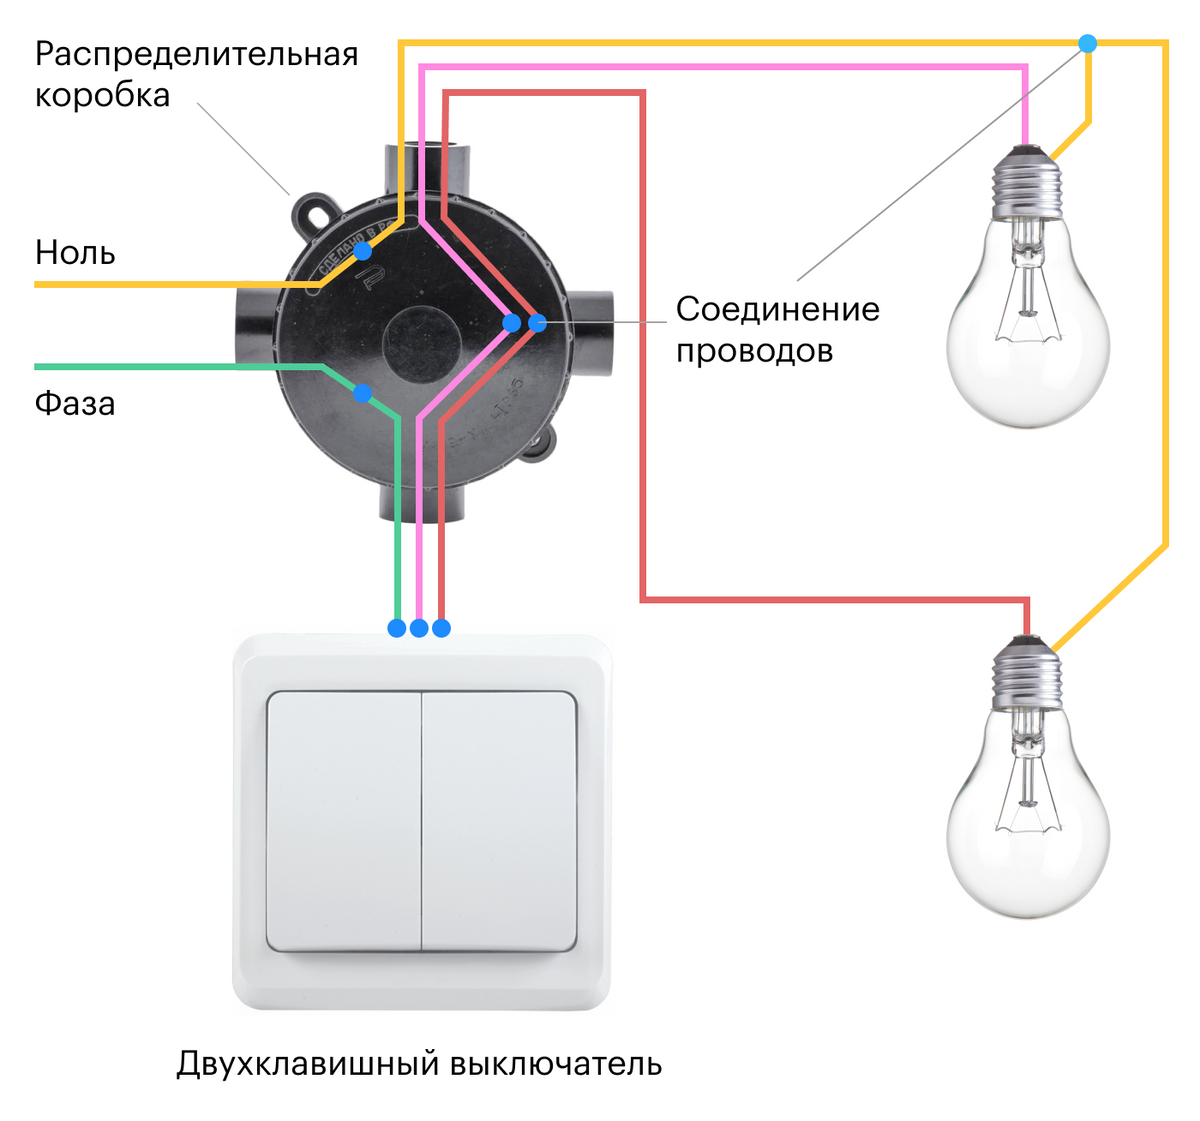 Как подключить одинарный выключатель. Соединение одинарного выключателя схема подключения. Схема подключения выключателя на две лампочки. Схема подключения распределительная коробка выключатель светильник. Схема подключения лампочки и выключателя к распред коробке.